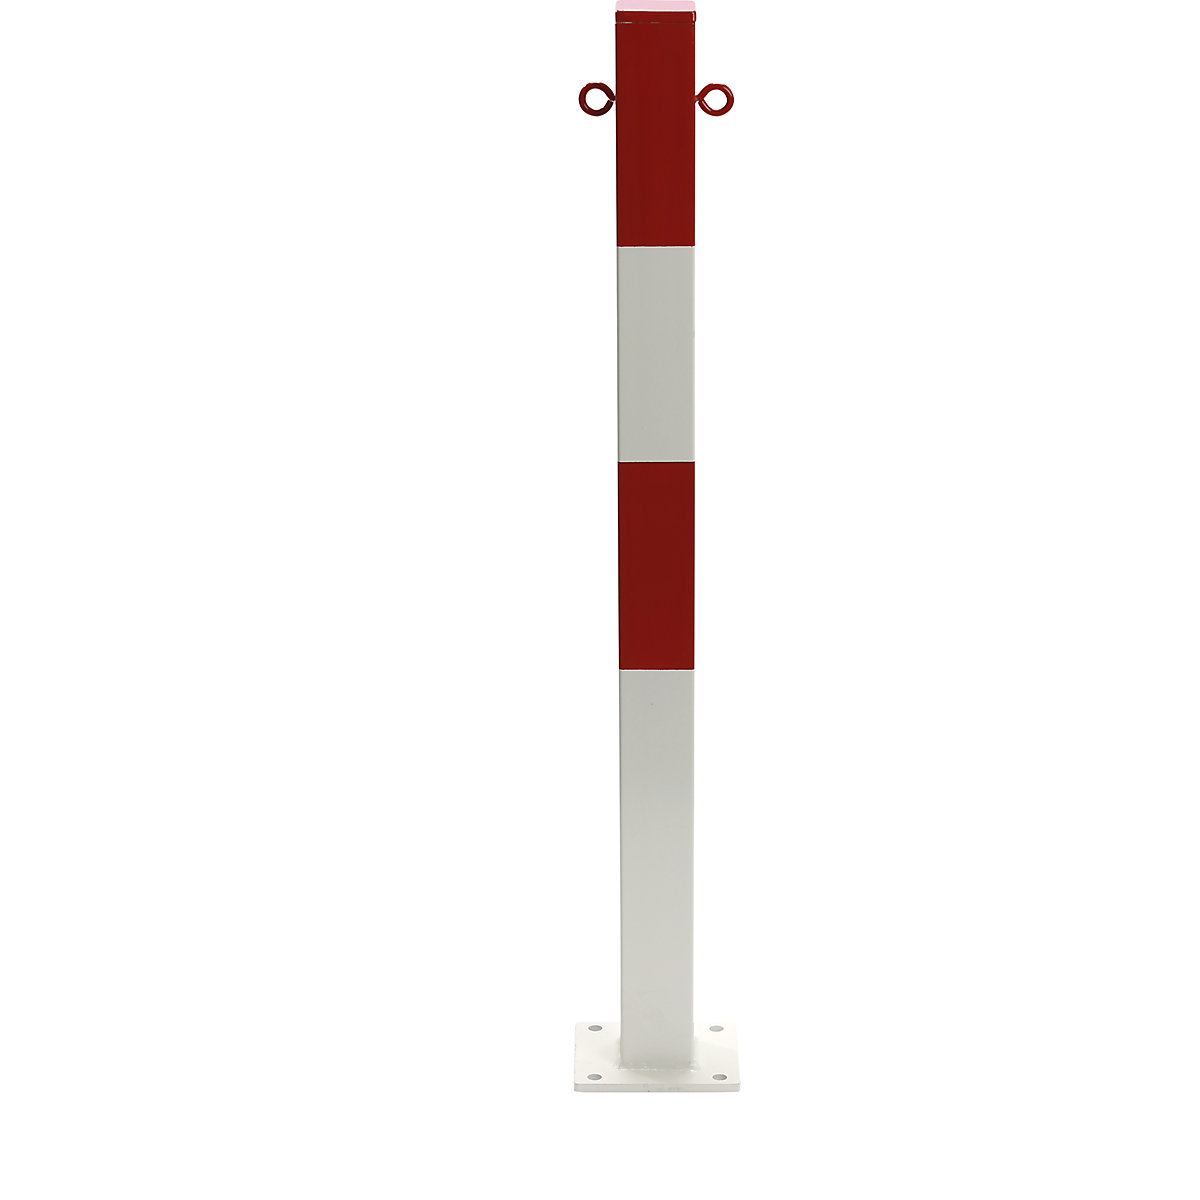 Słupek odgradzający, do zakotwienia, 70 x 70 mm, lakierowany na czerwono-biały, 2 zaczepy